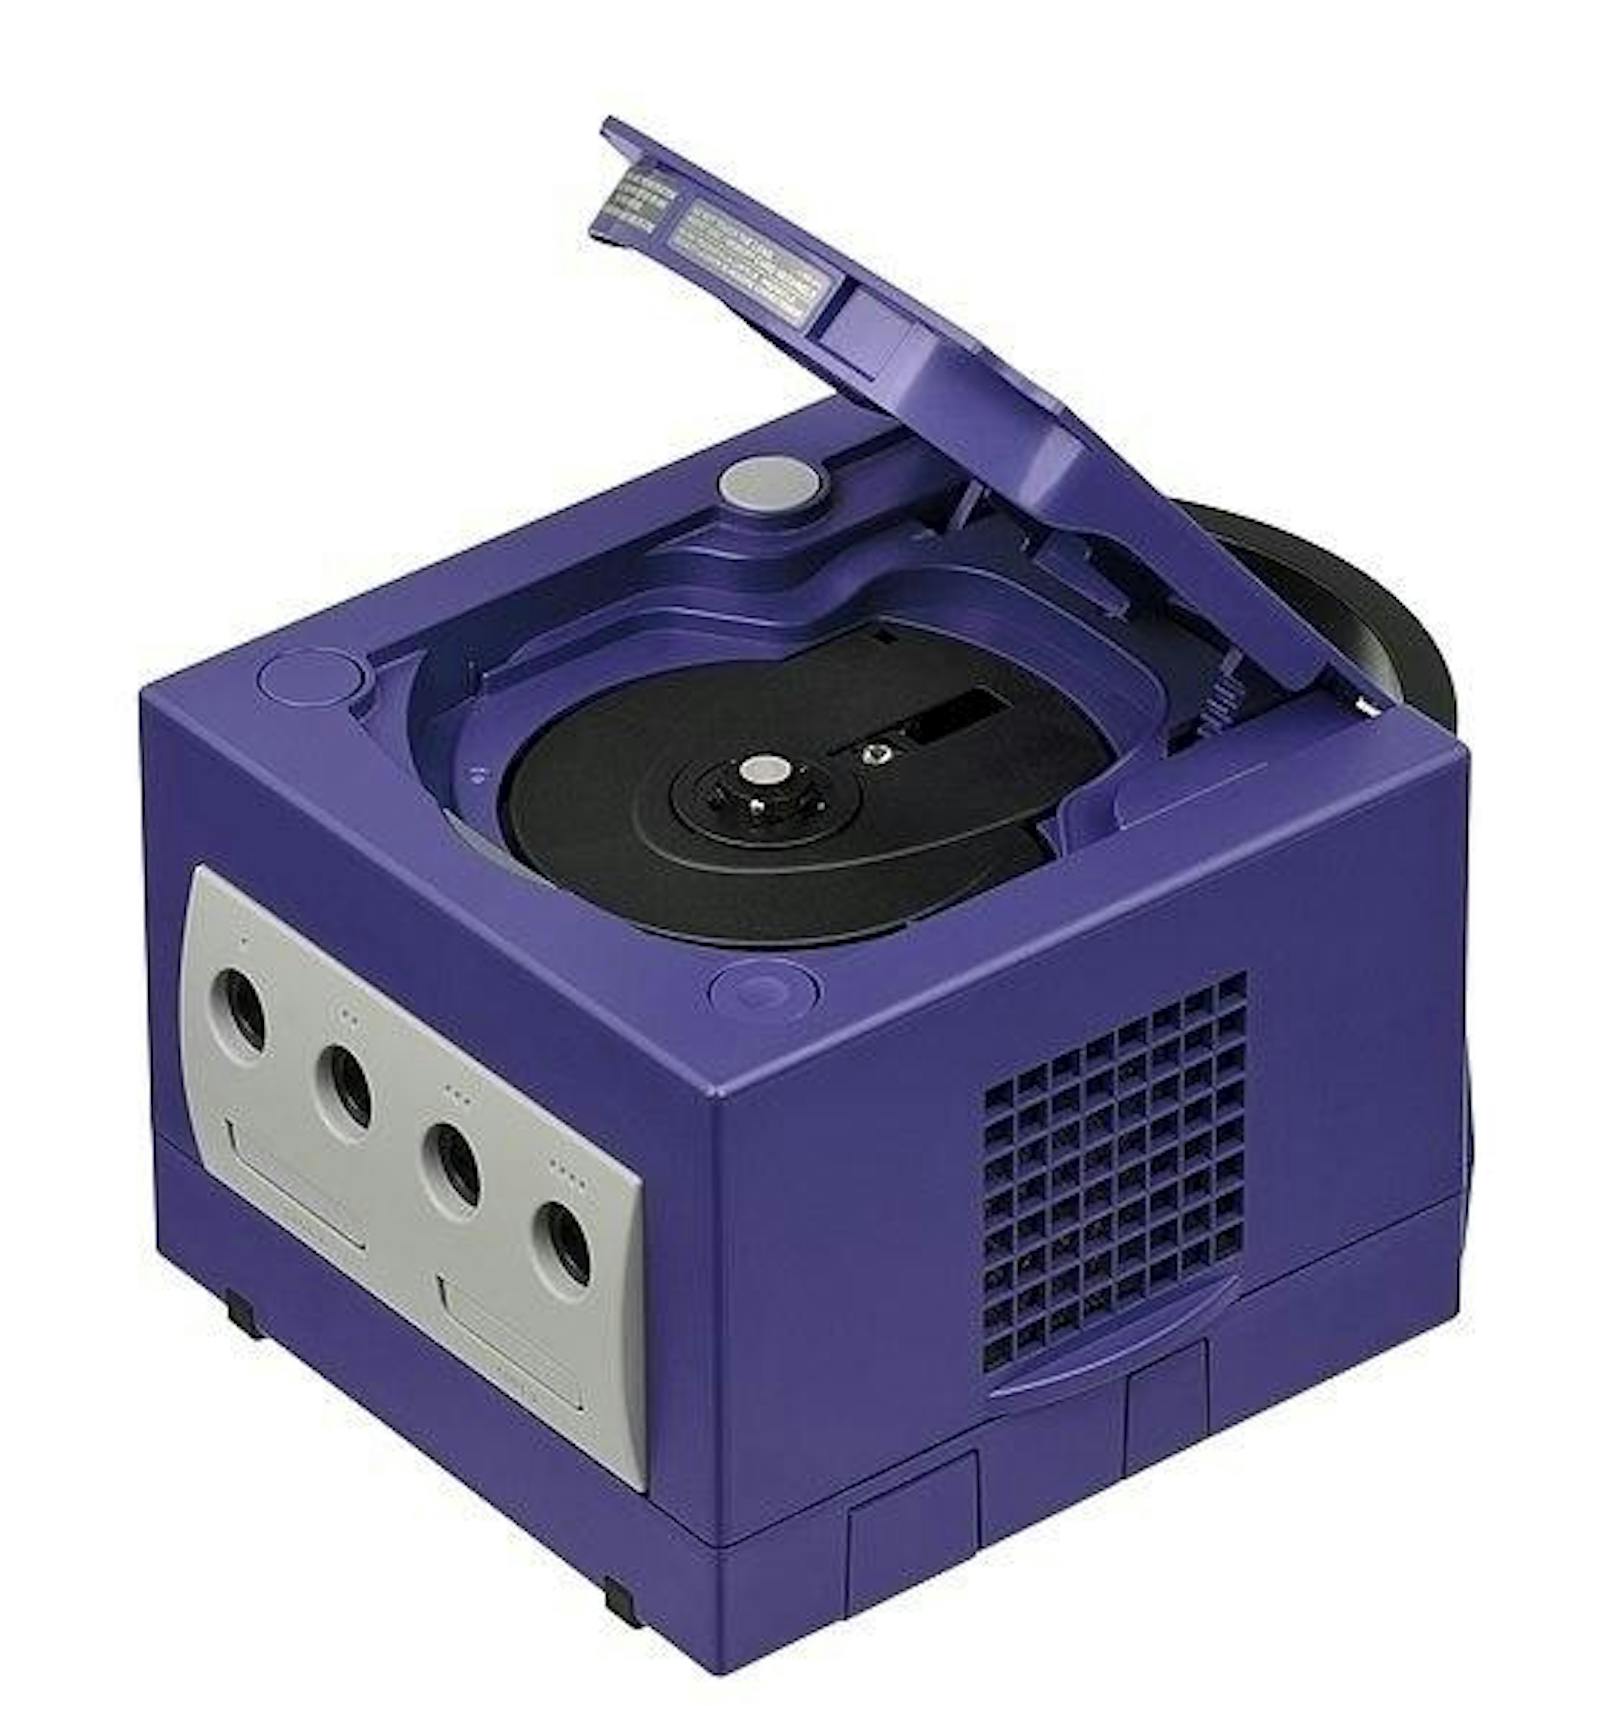 Das Gamecube konnte es nie mit den Verkaufszahlen von PlayStation 2 und Xbox  aufnehmen, wurde von Fans aber für seine mutigen Controller gelobt und hat bis heute eine treue Anhängerschaft.